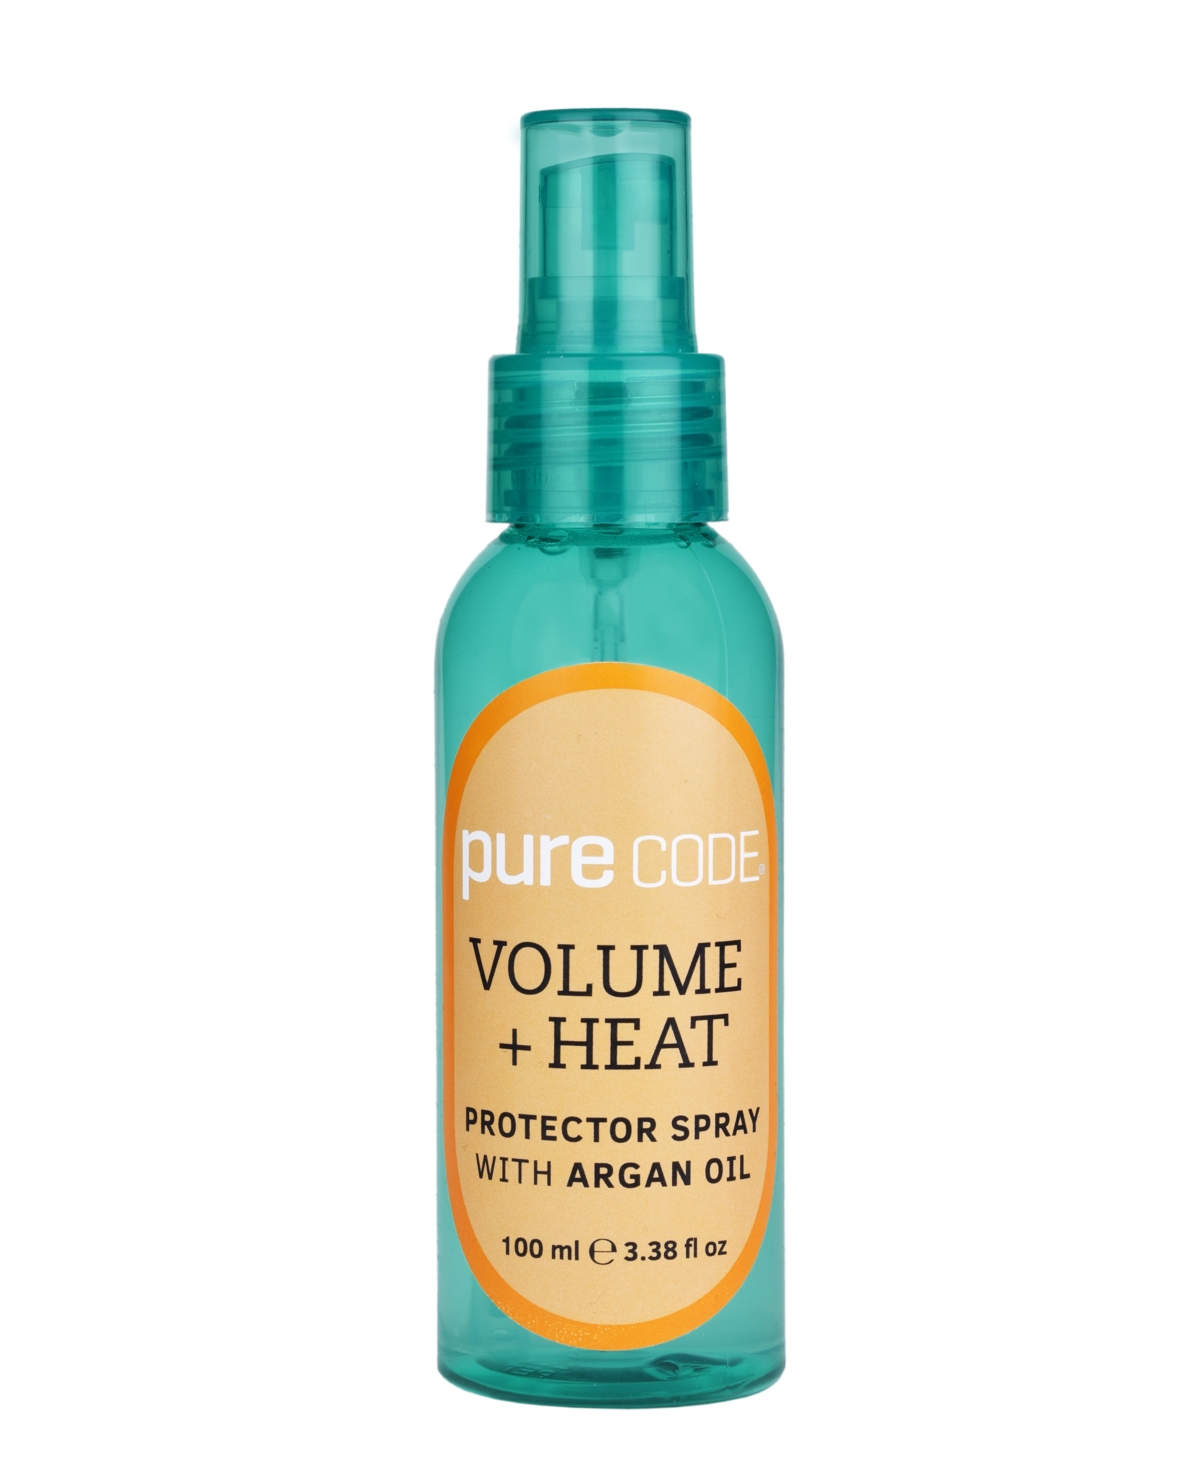 Volume + Heat Protector Spray With Argan Oil, 3.38 oz. - Clear